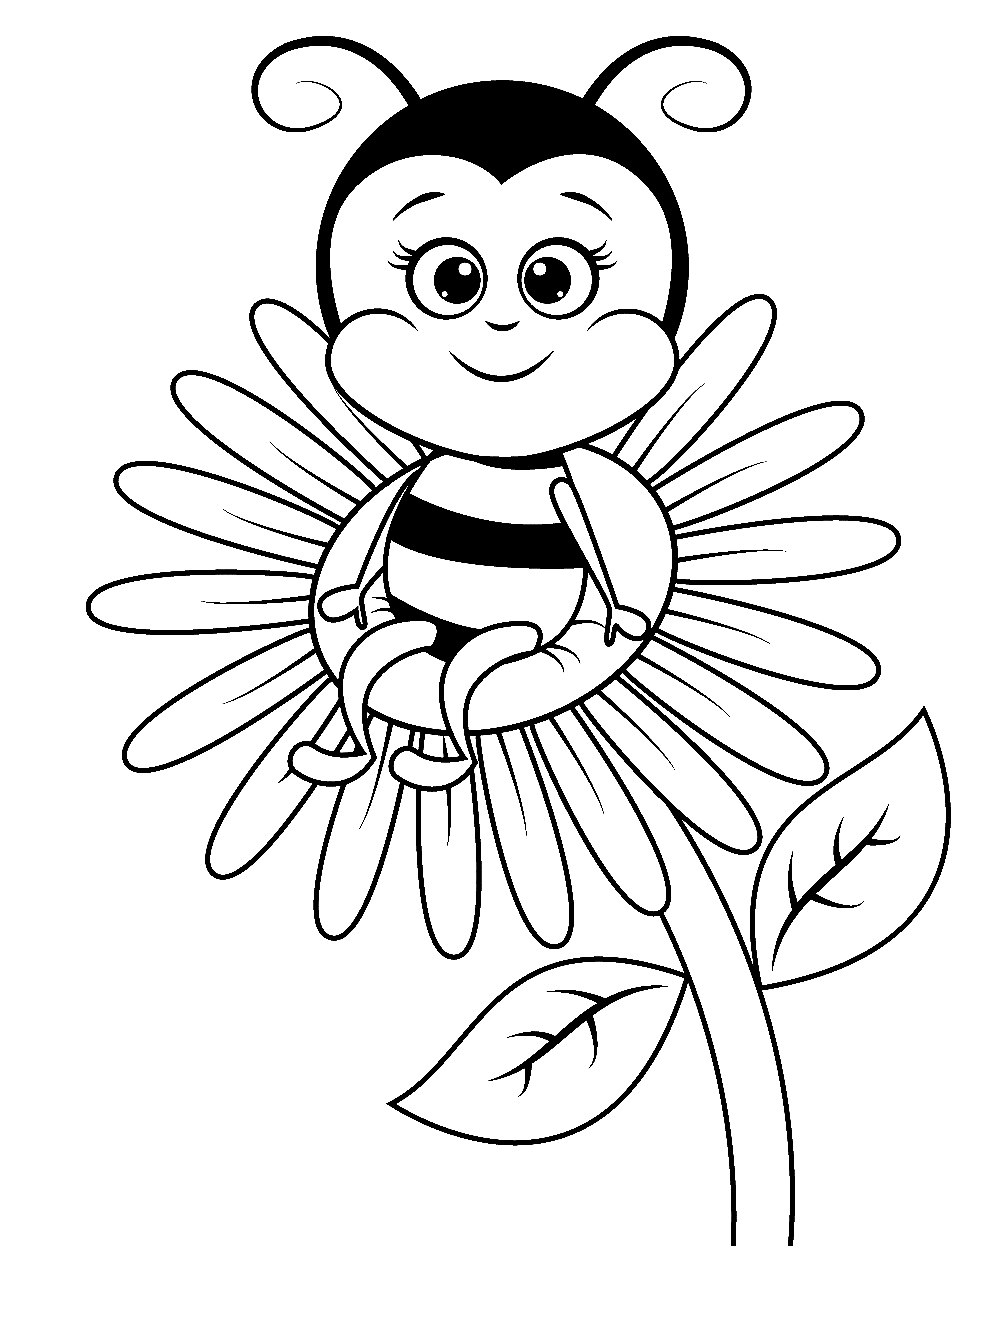 نحلة تجلس على زهرة من النحل